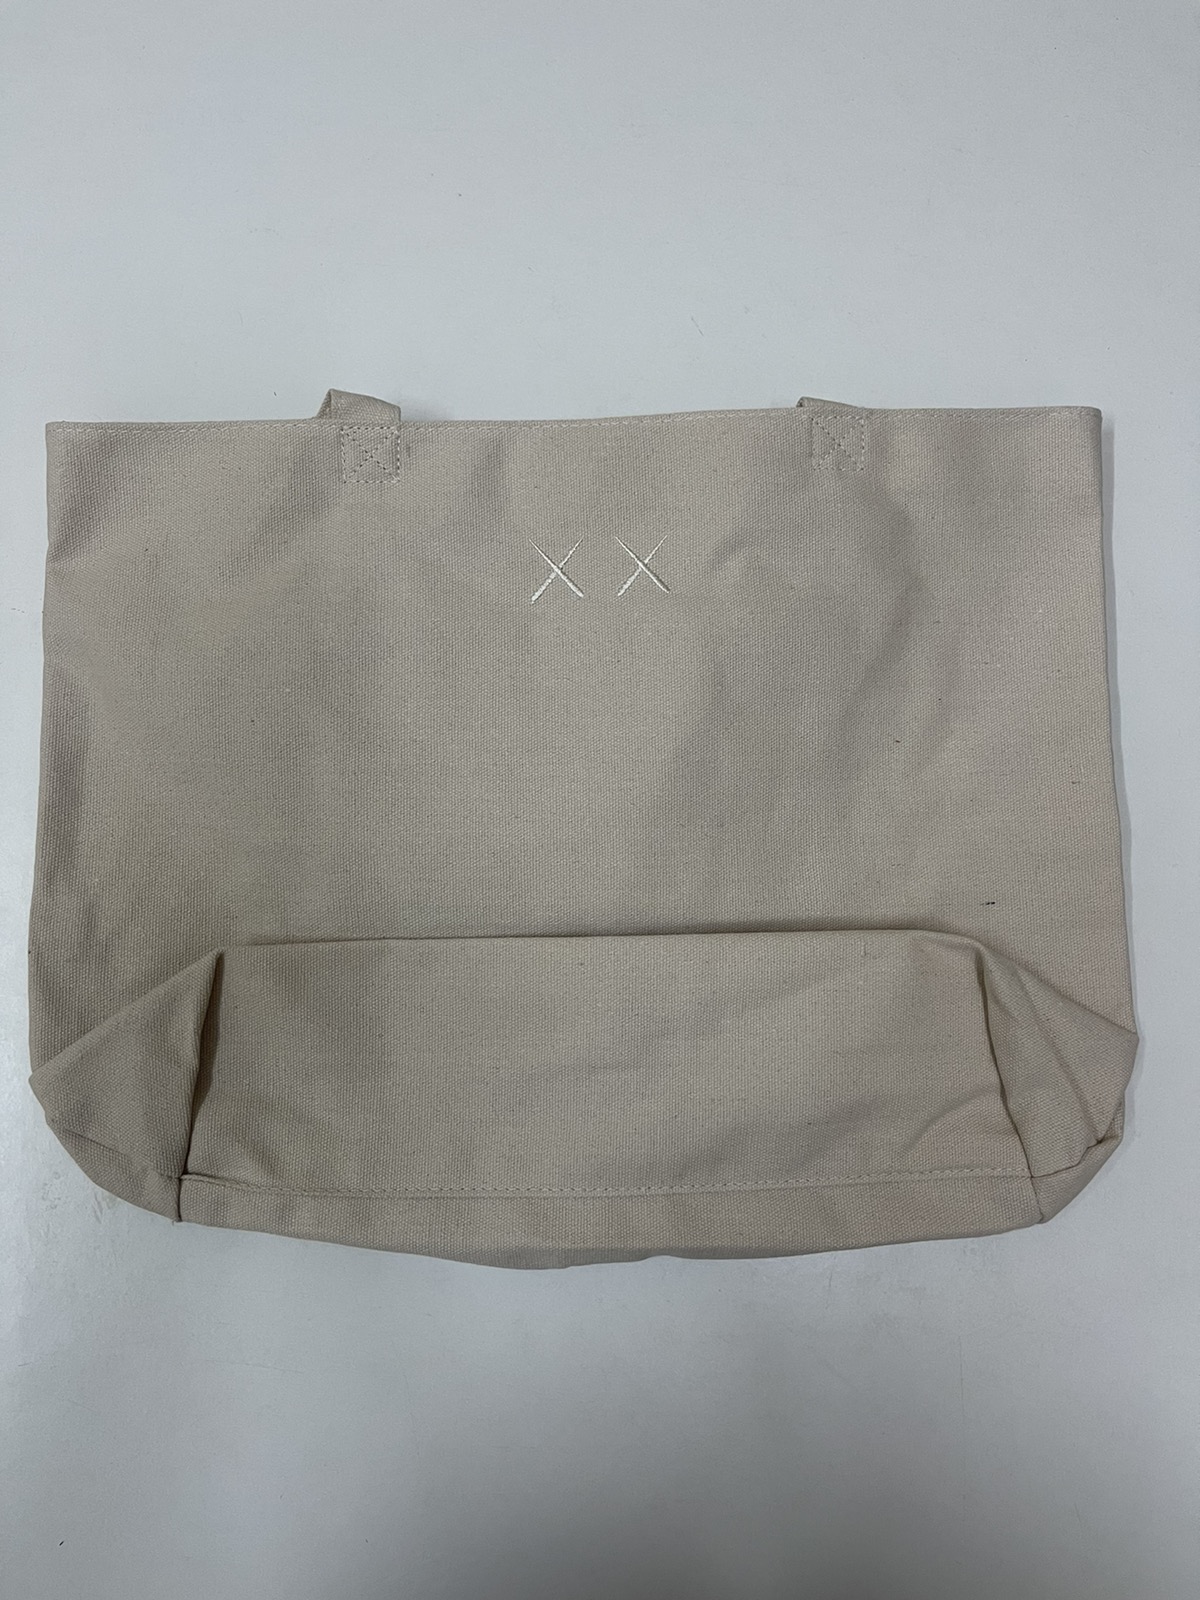 Kaws - Kaws Tote Bag Limited Edition / Uniqlo / Evangelion - 9